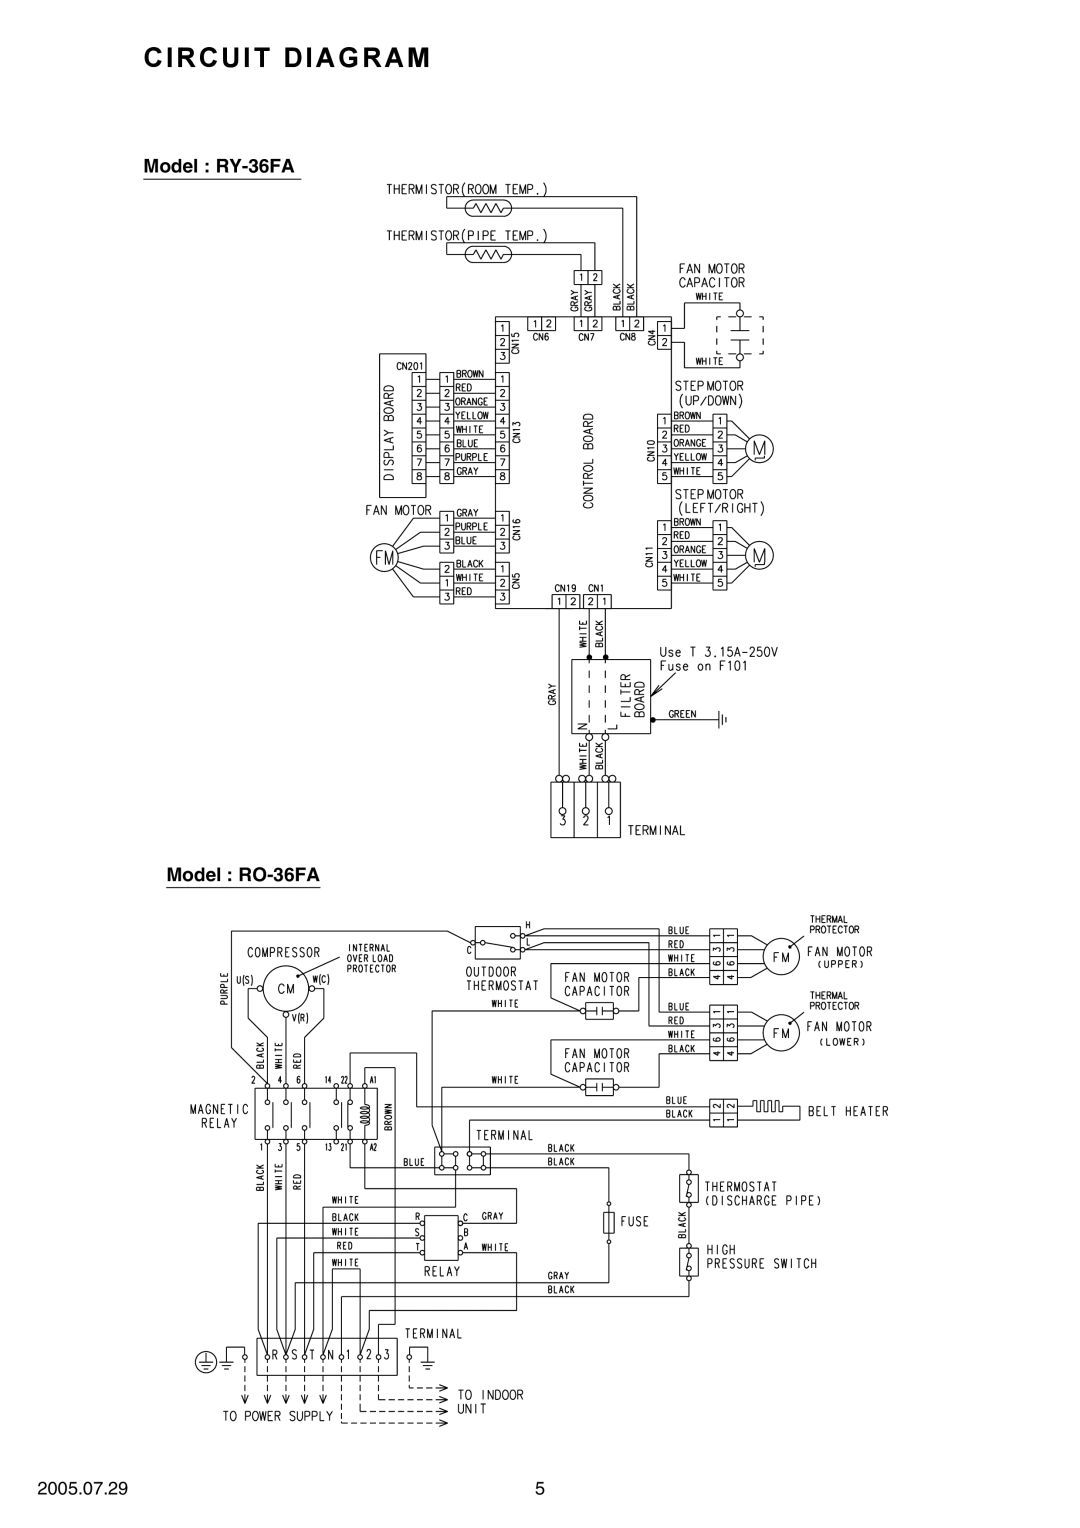 Fujitsu RY-36UA, RO-36UA specifications Circuit Diagram, Model RY-36FA Model RO-36FA, 2005.07.29 